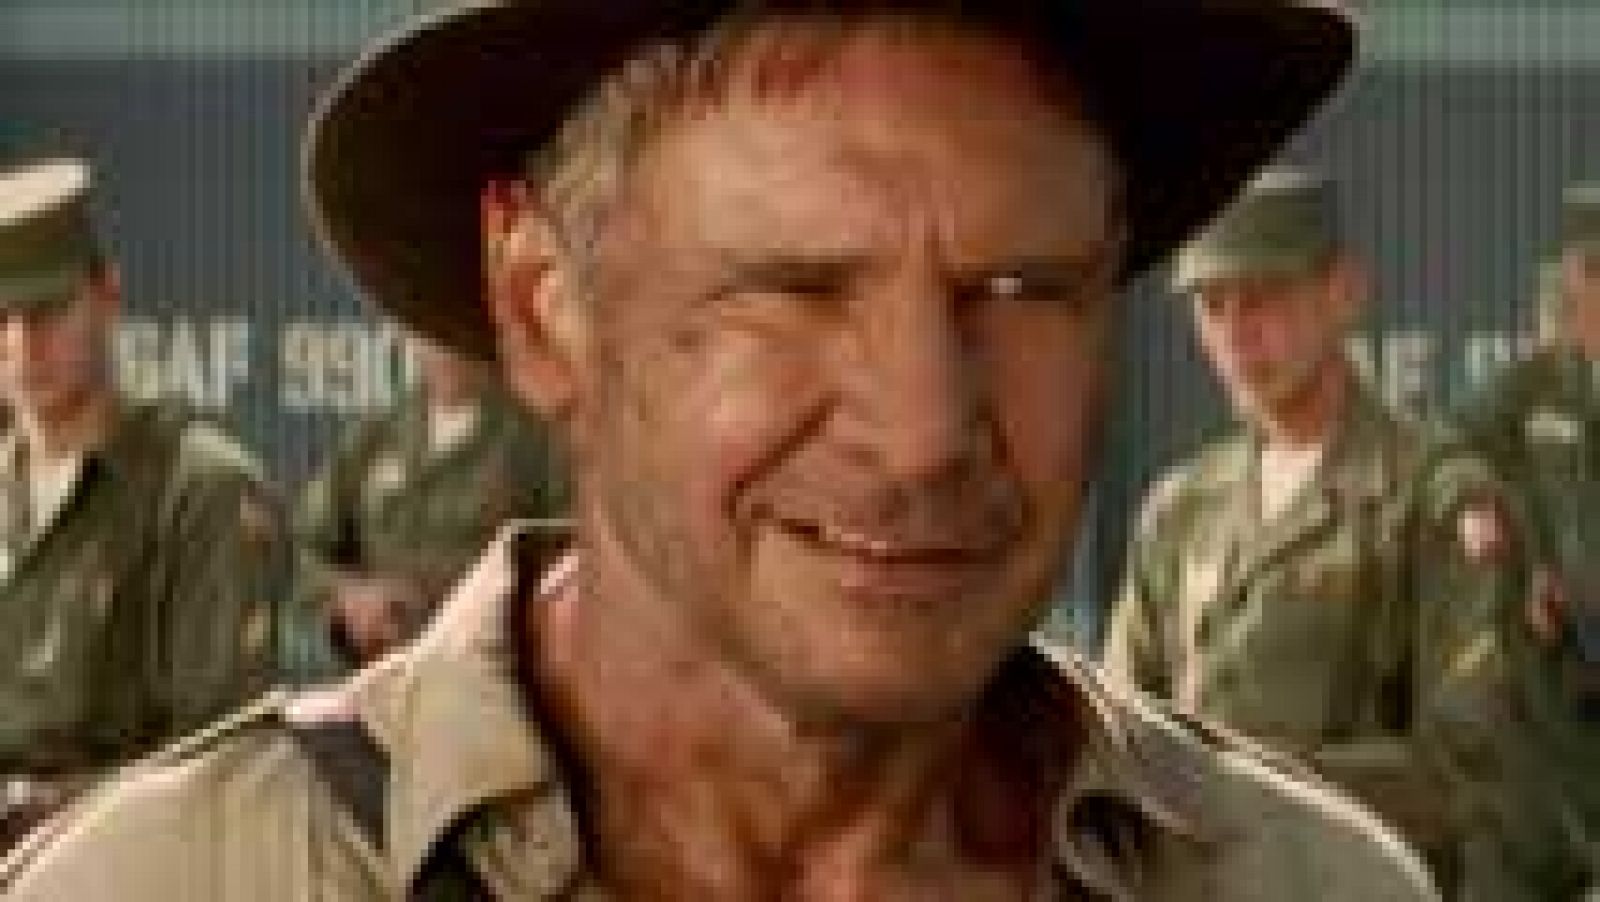 Indiana Jones vuelve en 2019 con una nueva aventura